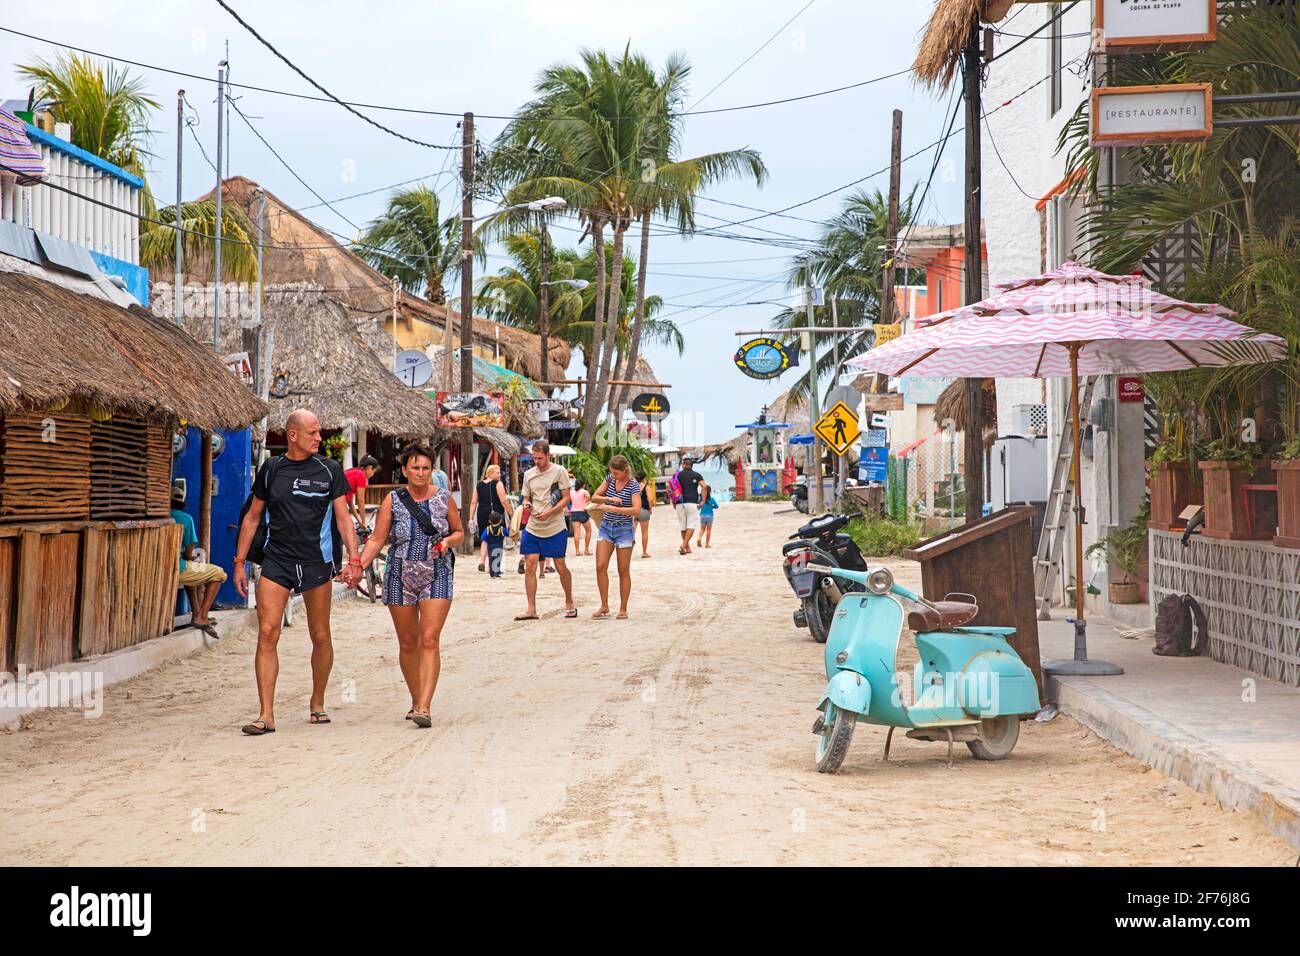 Touristes occidentaux marchant dans la rue sur Isla Holbox, île dans l'état mexicain de Quintana Roo, le long de la côte nord de la péninsule de Yucatán, Mexique Banque D'Images